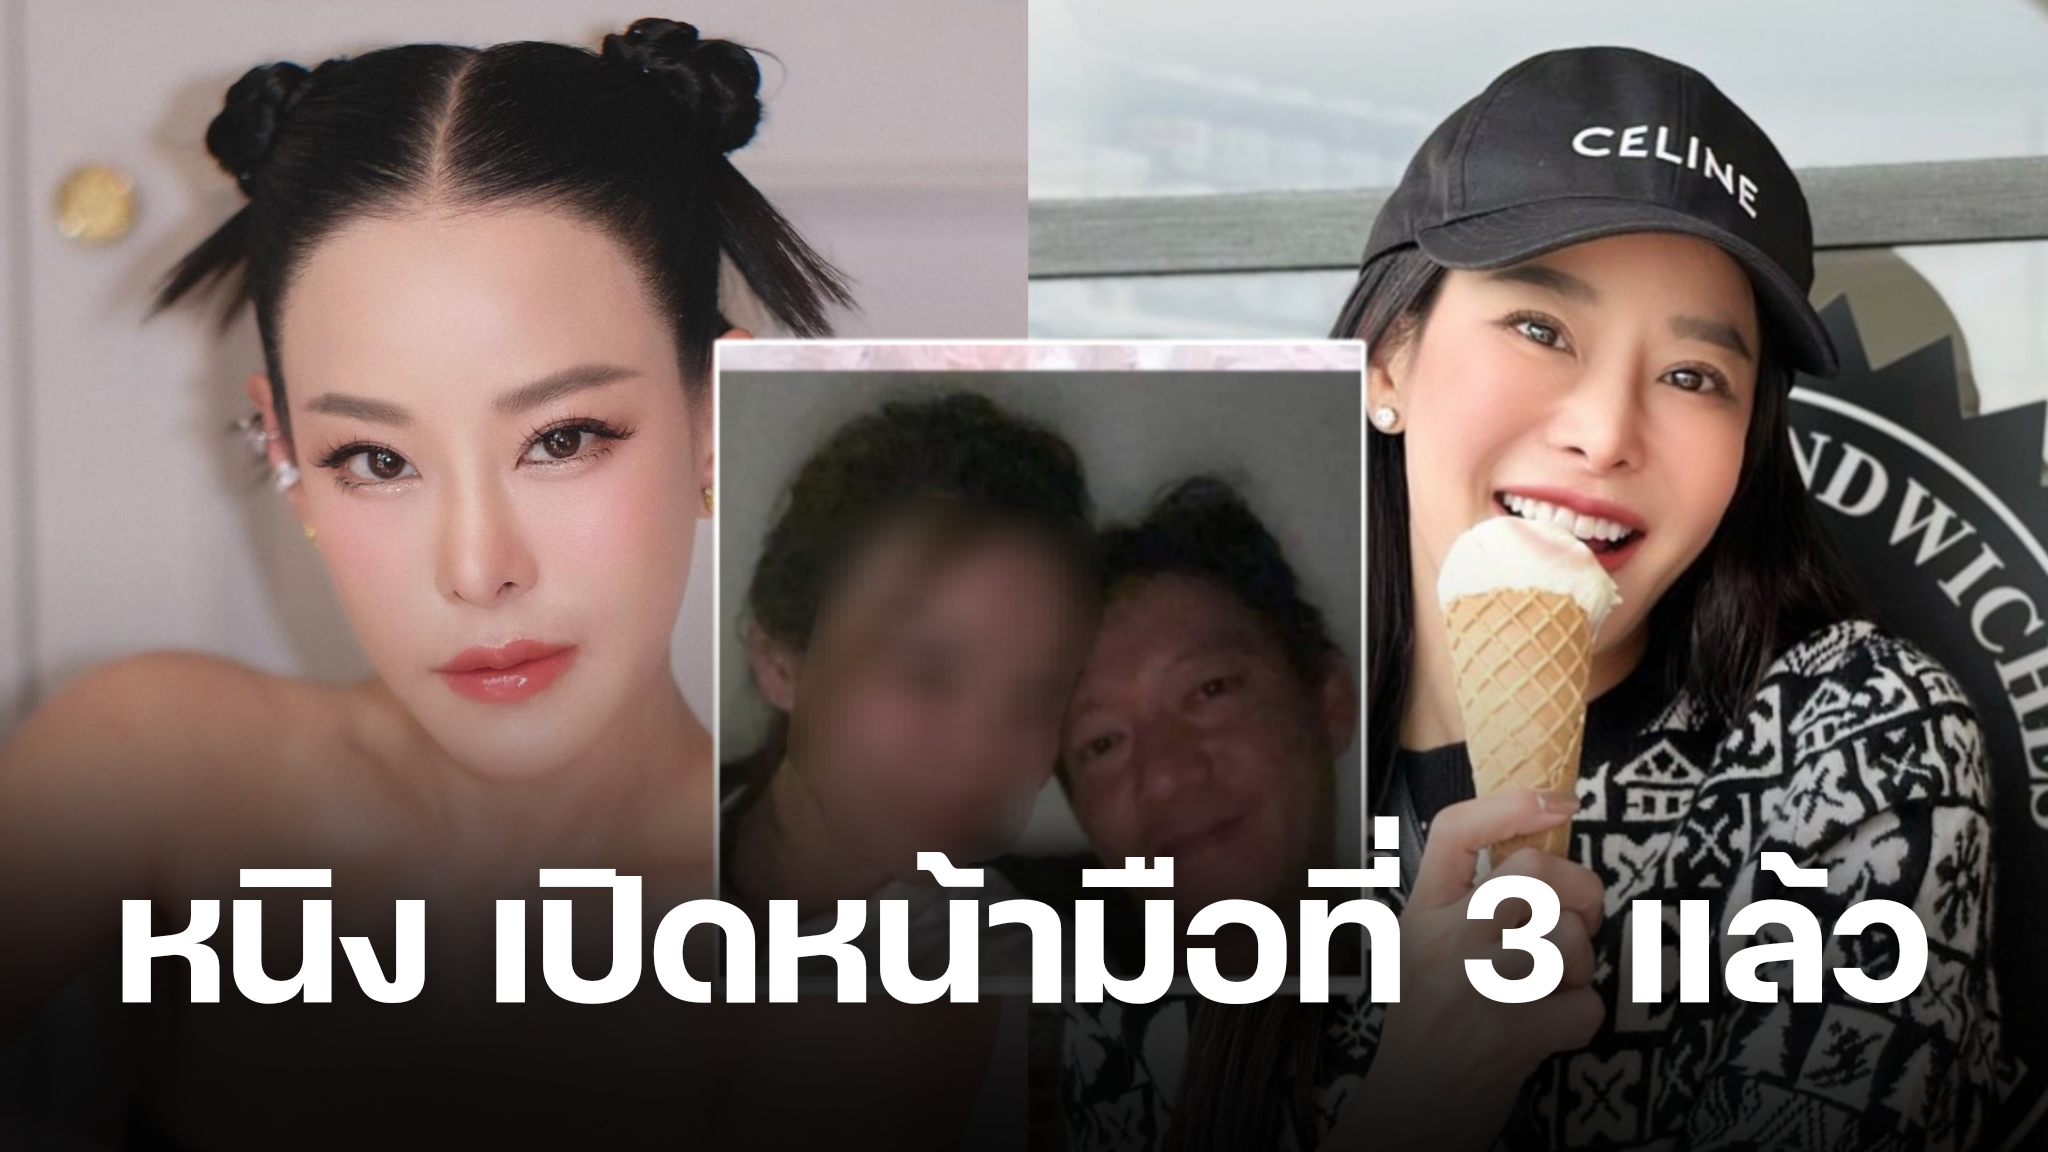 ด่วน! หนิง ปณิตา ดับเครื่องชน เปิดหน้ามือที่ 3 หลังคนเข้าใจผิดโยงหลานสาว |  Thaiger ข่าวไทย